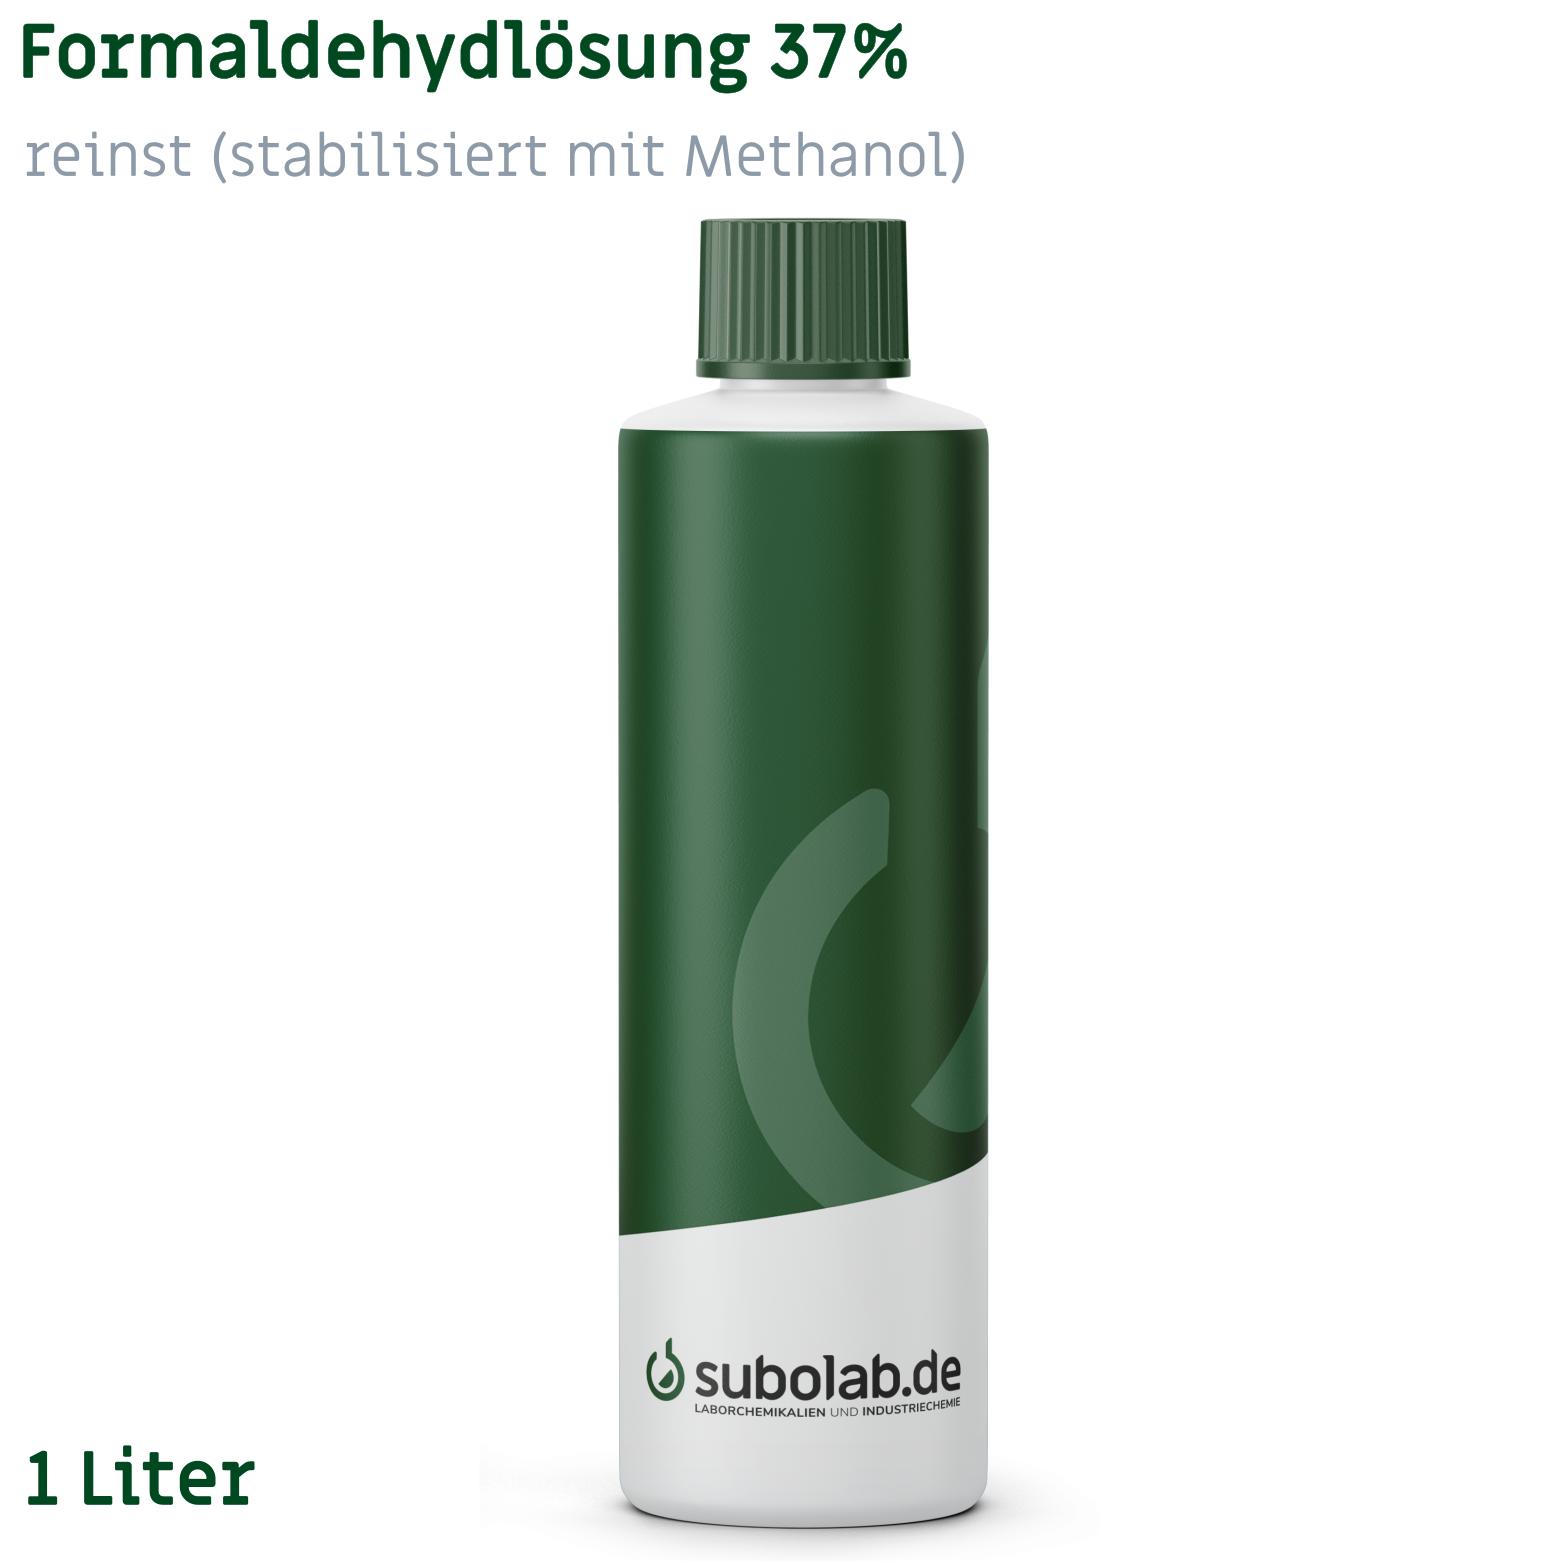 Bild von Formaldehydlösung 37% reinst (stabilisiert mit Methanol) (1 Liter)